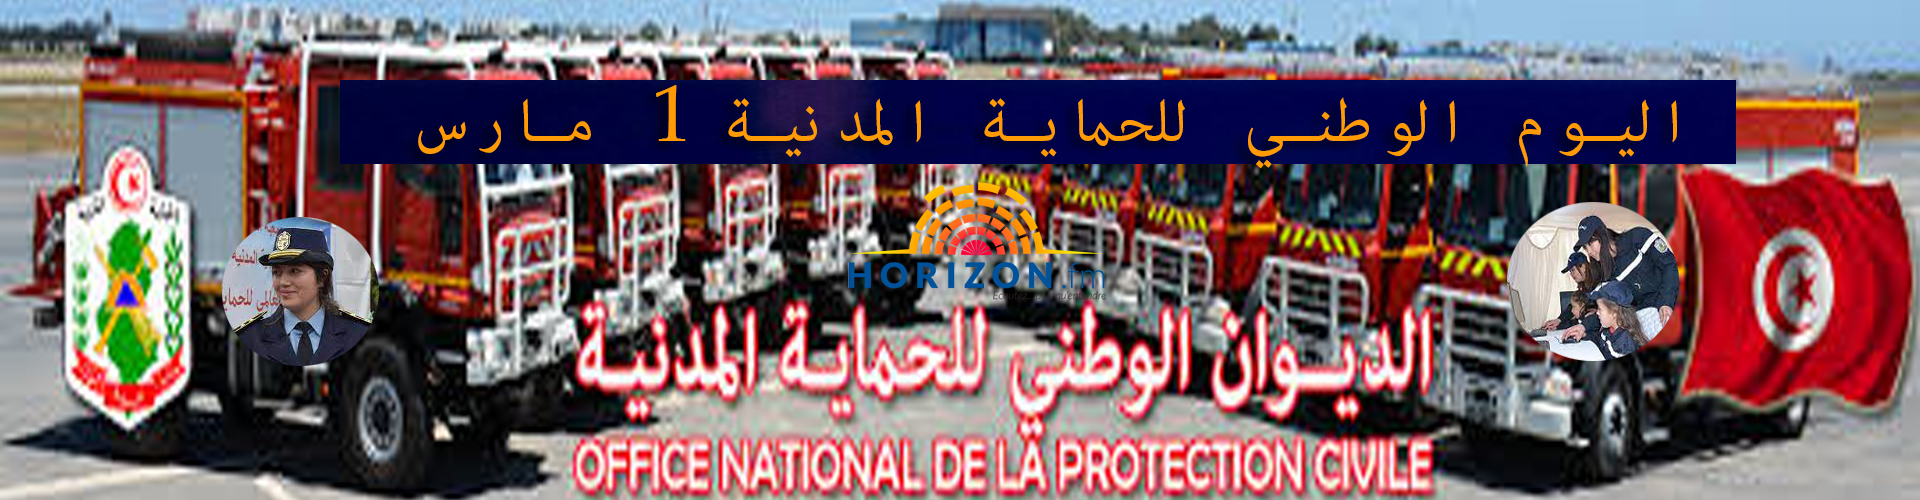 تونس تحتفل باليوم العالمي للحماية المدنية